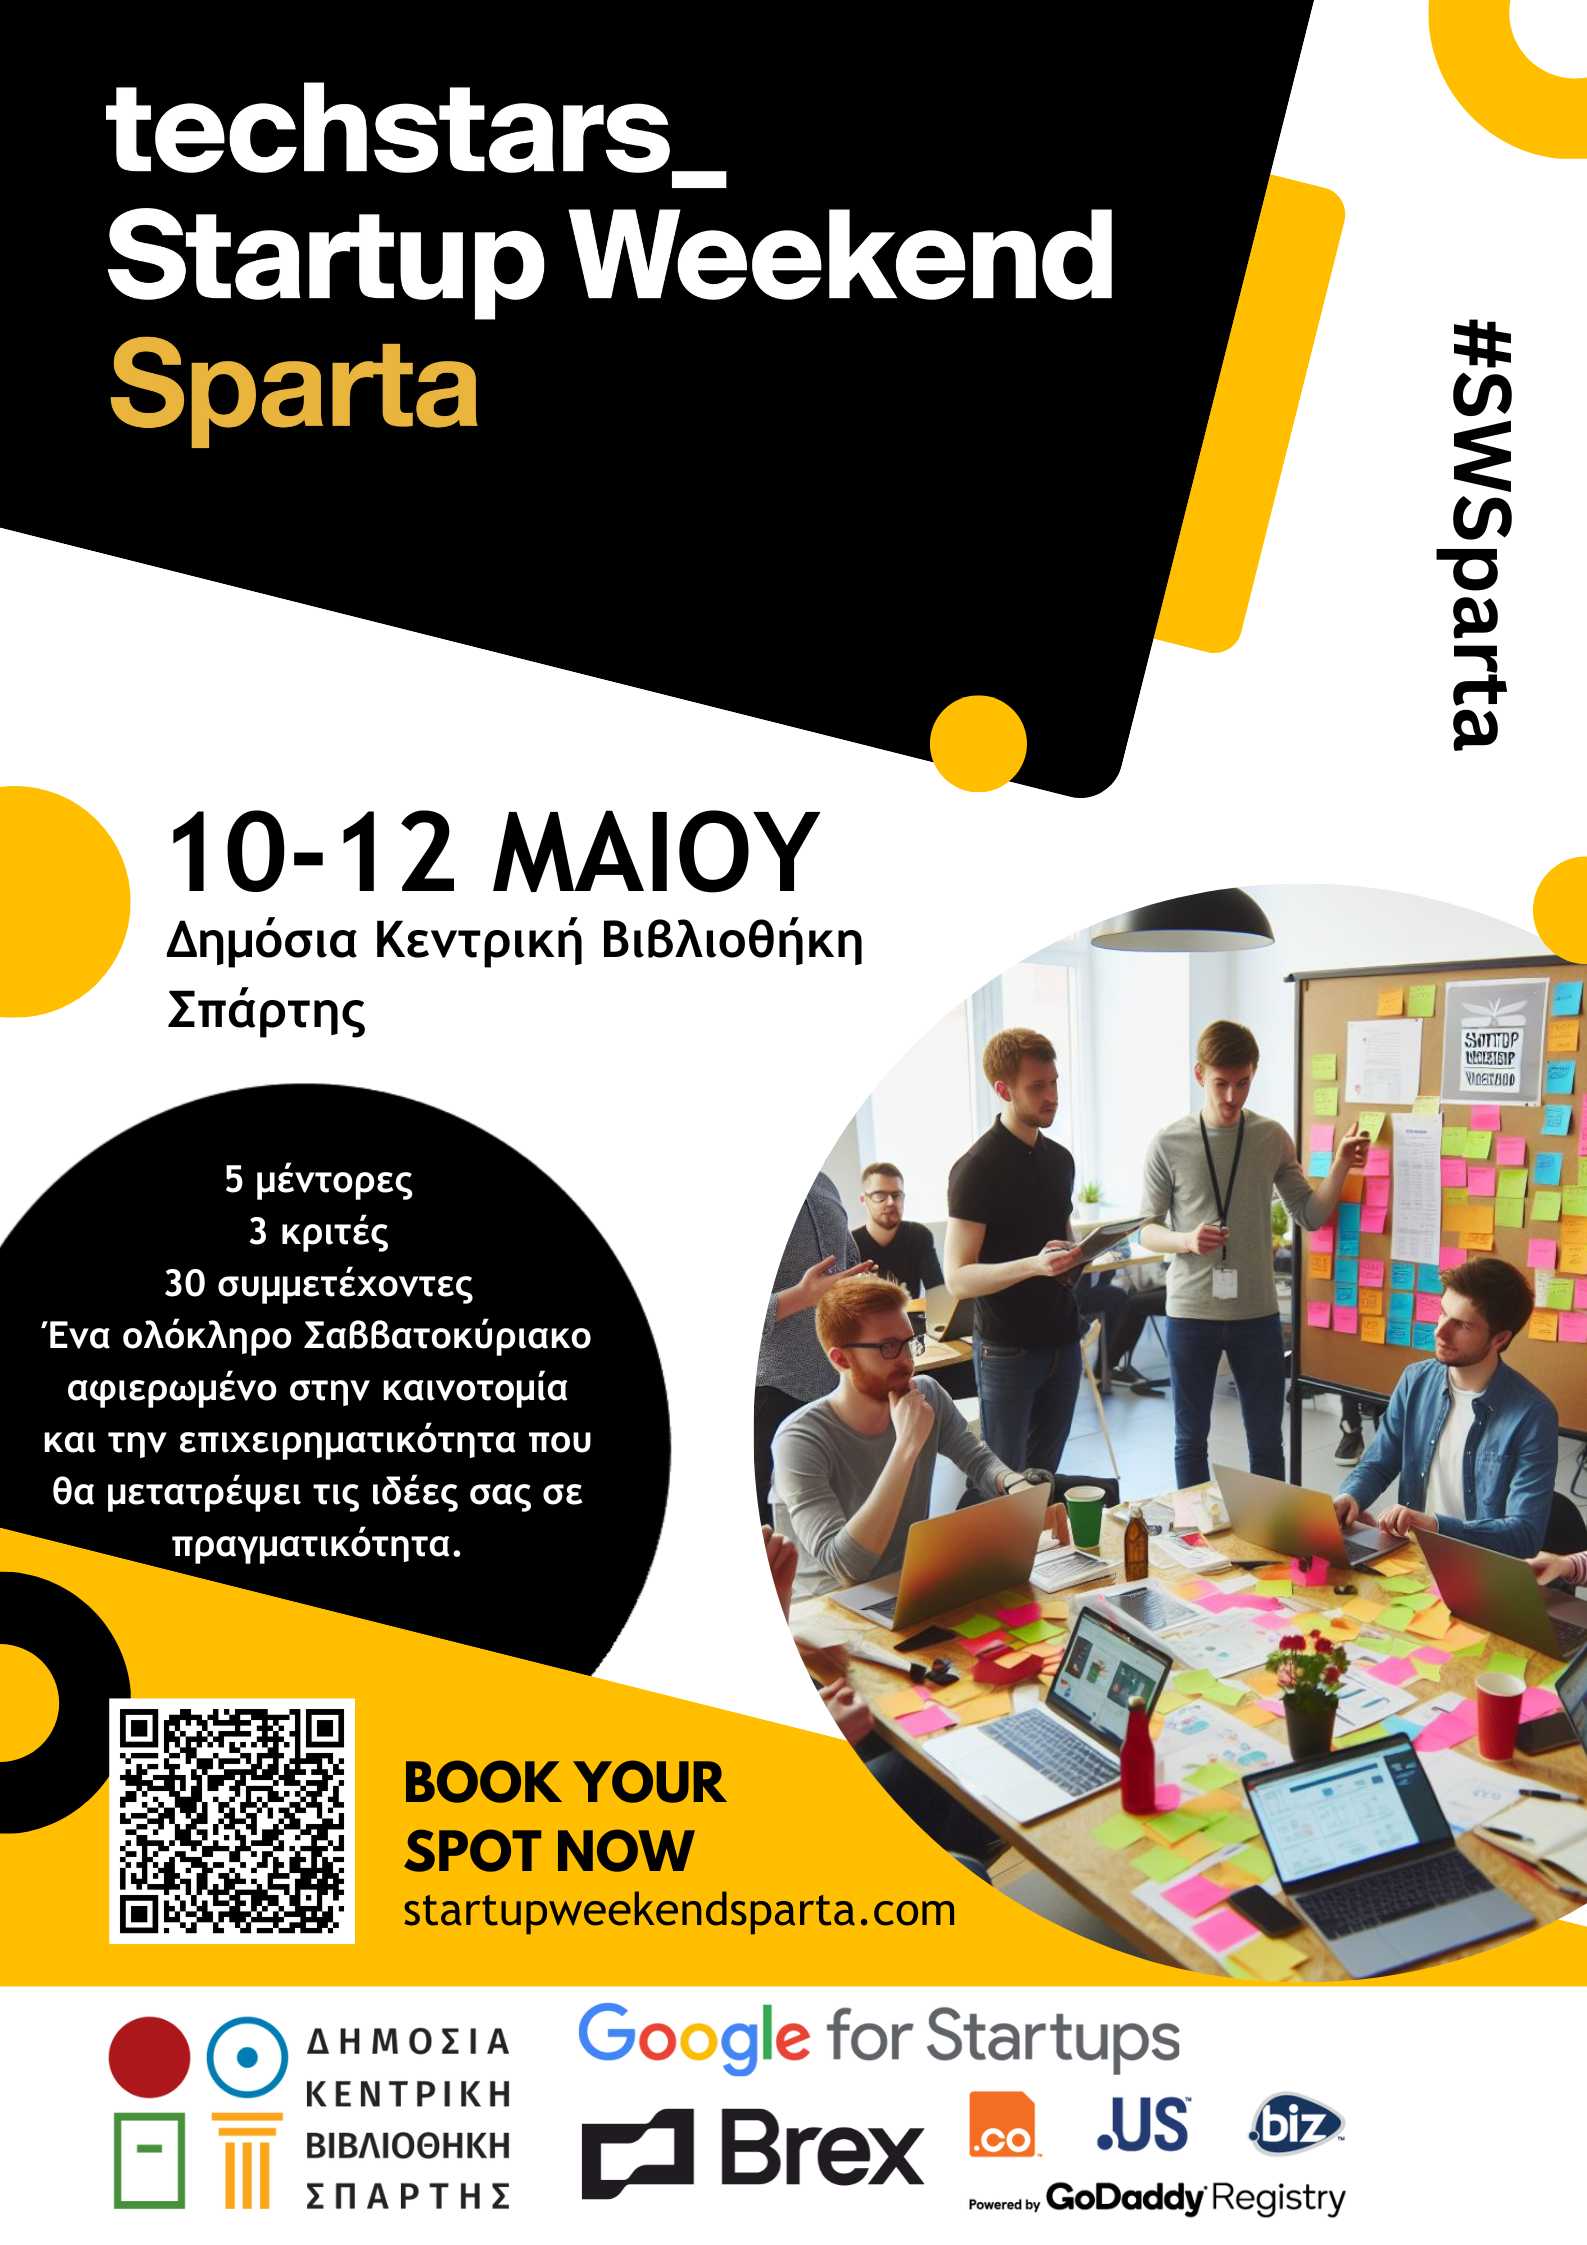 Το πρώτο Startup Weekend Sparta. Εκπαιδευτική ανταγωνιστική εκδήλωση επιχειρηματικότητας και καινοτομίας